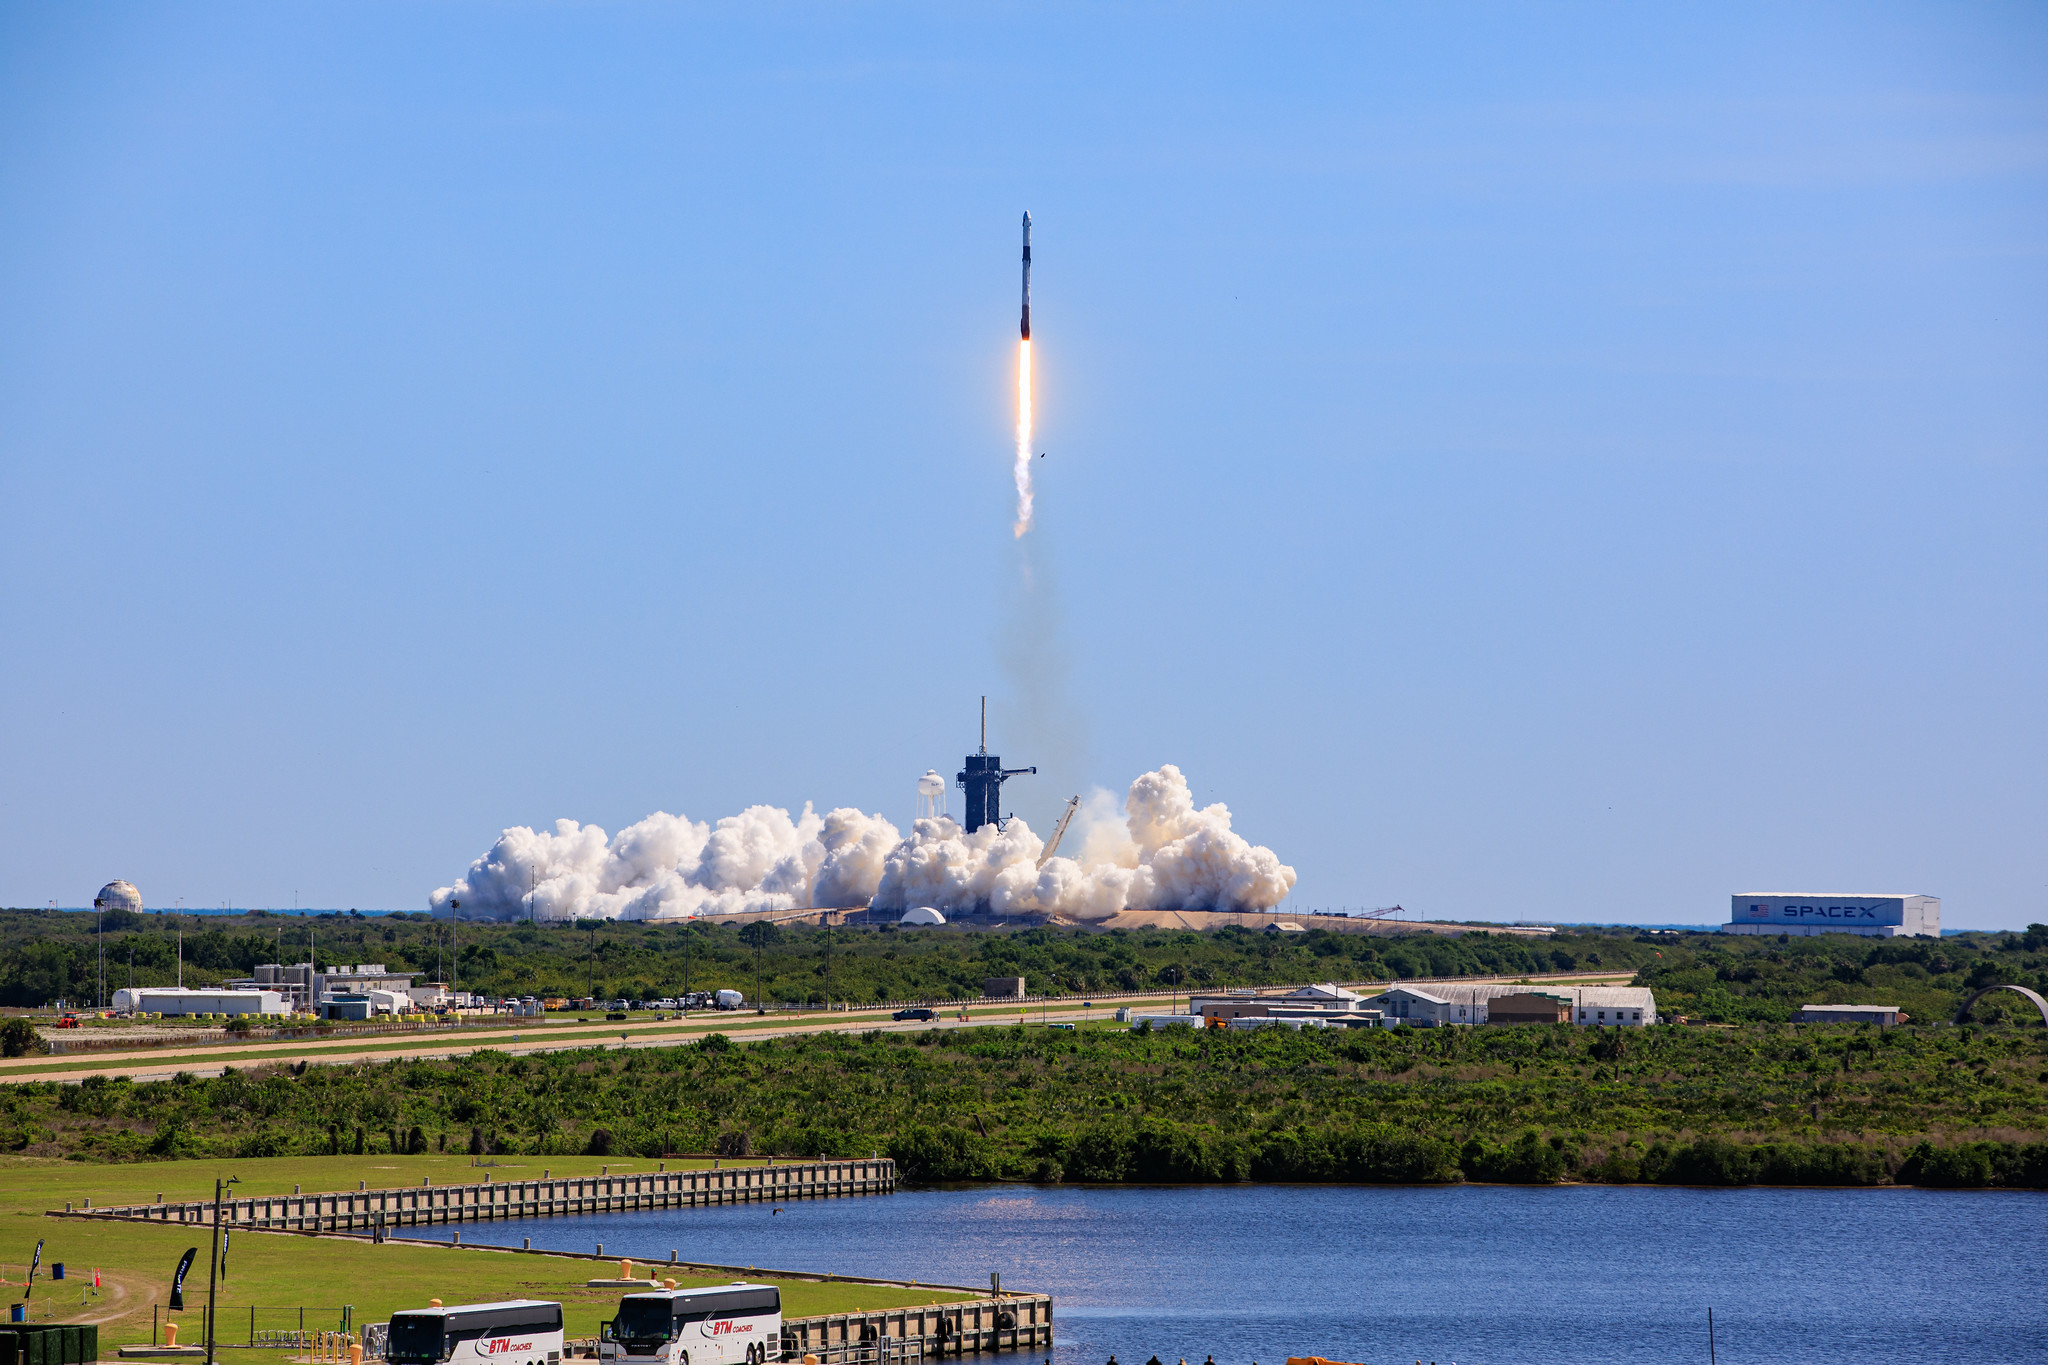 La mission SpaceX Crew-5 de la NASA vise le lancement le mercredi 5 octobre vers la Station spatiale internationale depuis le Kennedy Space Center de l'agence en Floride. La fusée SpaceX Falcon 9 et le vaisseau spatial Dragon transporteront les astronautes de la NASA Nicole Mann et Josh Cassada, ainsi que l'astronaute de la JAXA (Agence japonaise d'exploration aérospatiale) Koichi Wakata et la cosmonaute de Roscosmos Anna Kikina, vers le complexe orbital pour une mission d'expédition scientifique.